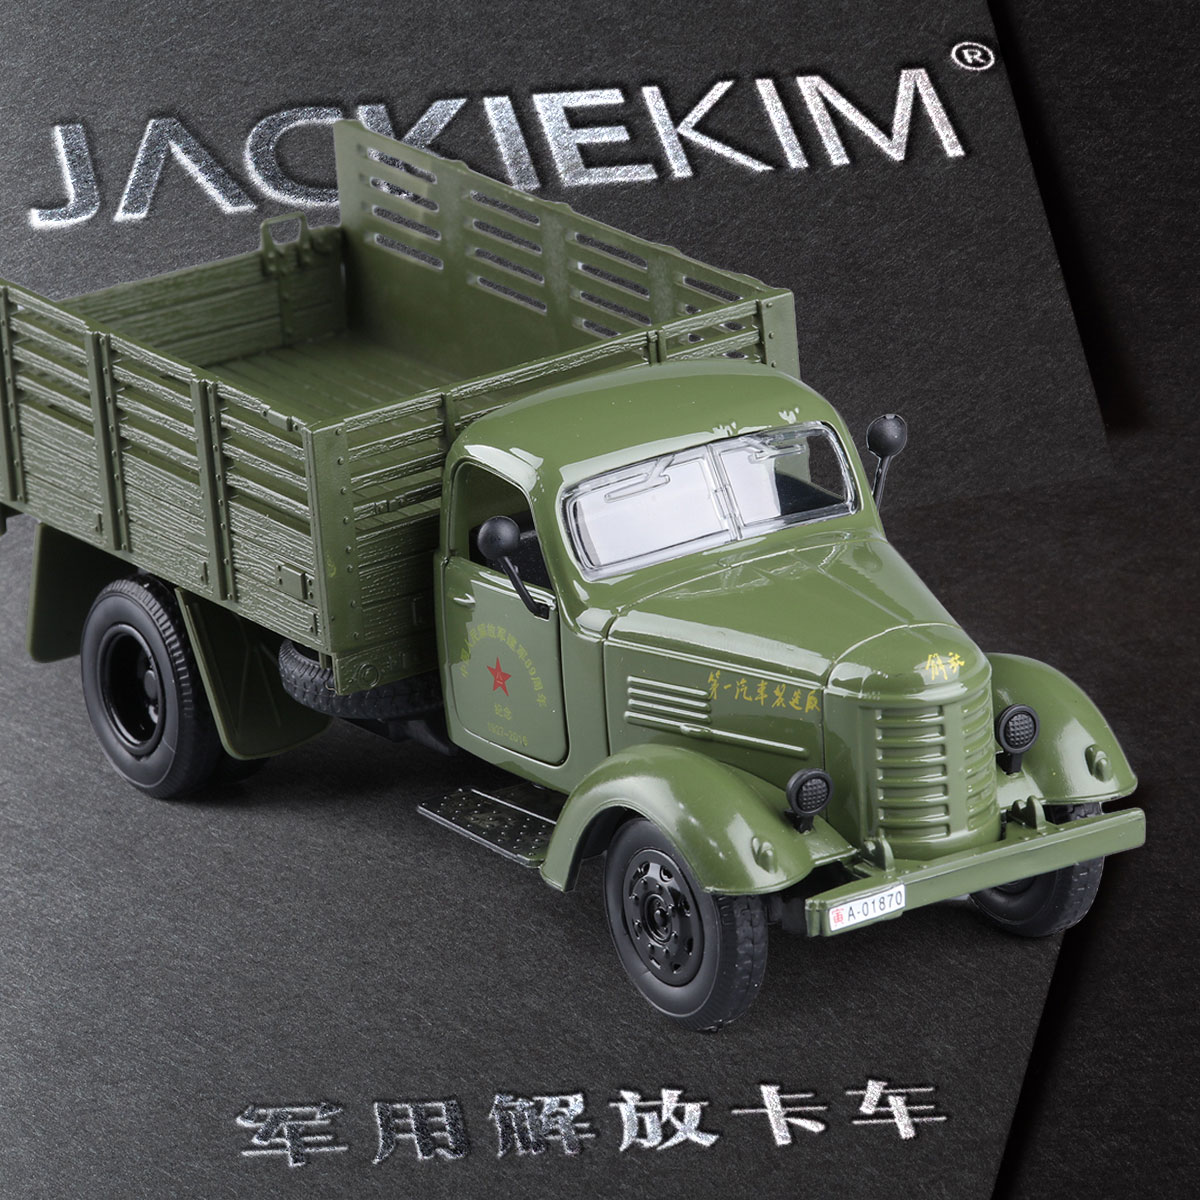 新品特价1:32合金汽车模型玩具 解放卡车军事运输车儿童合金车模